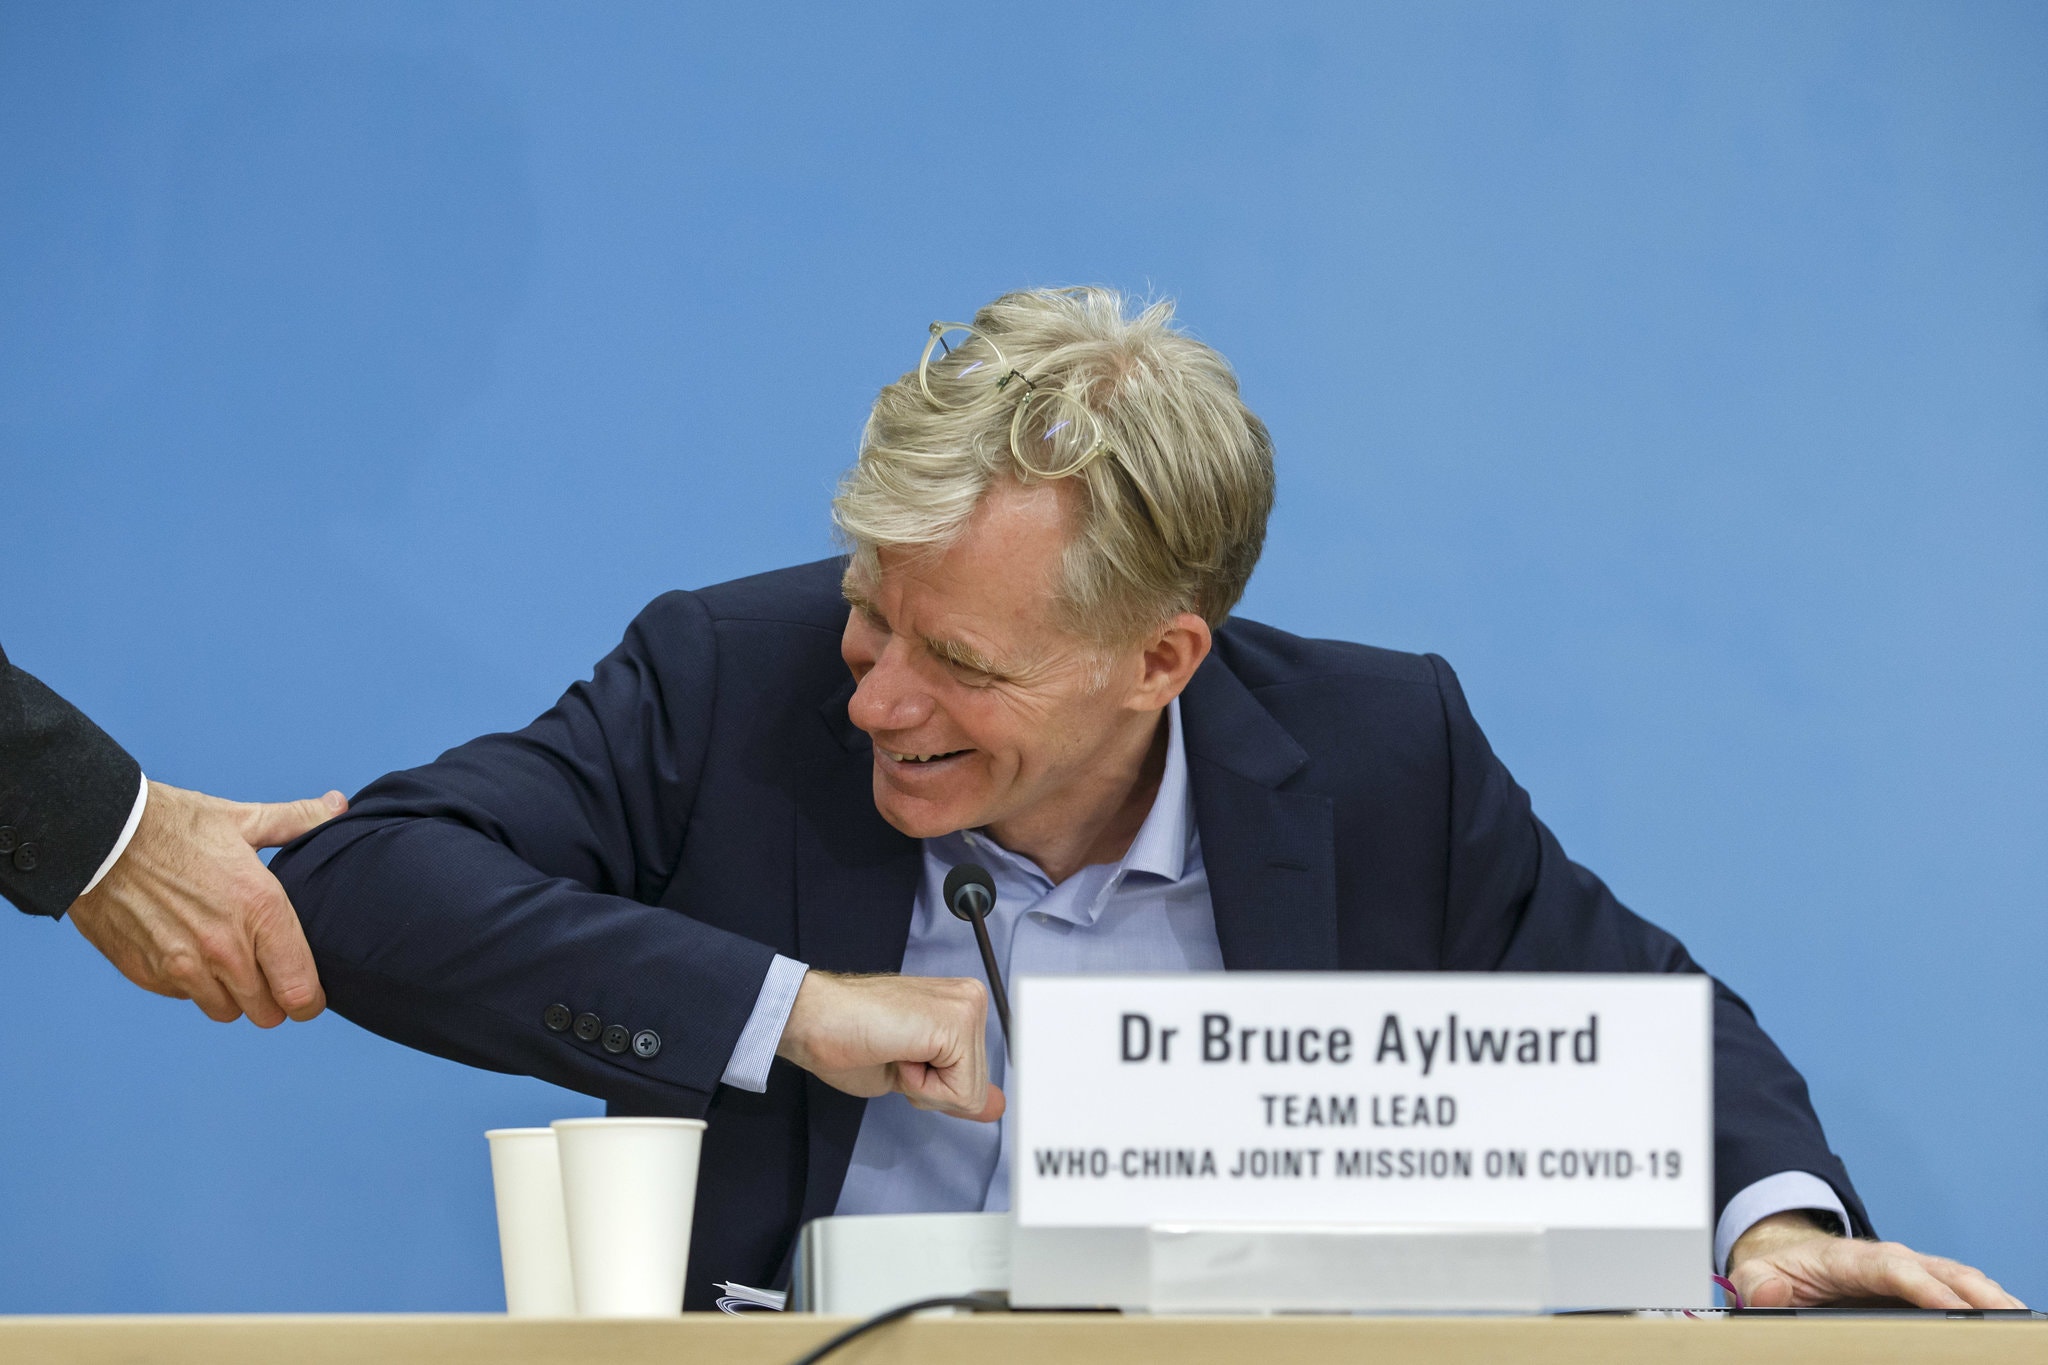 Tiến sỹ Bruce Aylward đã giơ khuỷu tay thay cho cái bắt tay trong cuộc họp của WHO ở Geneva. (Nguồn: EPA)